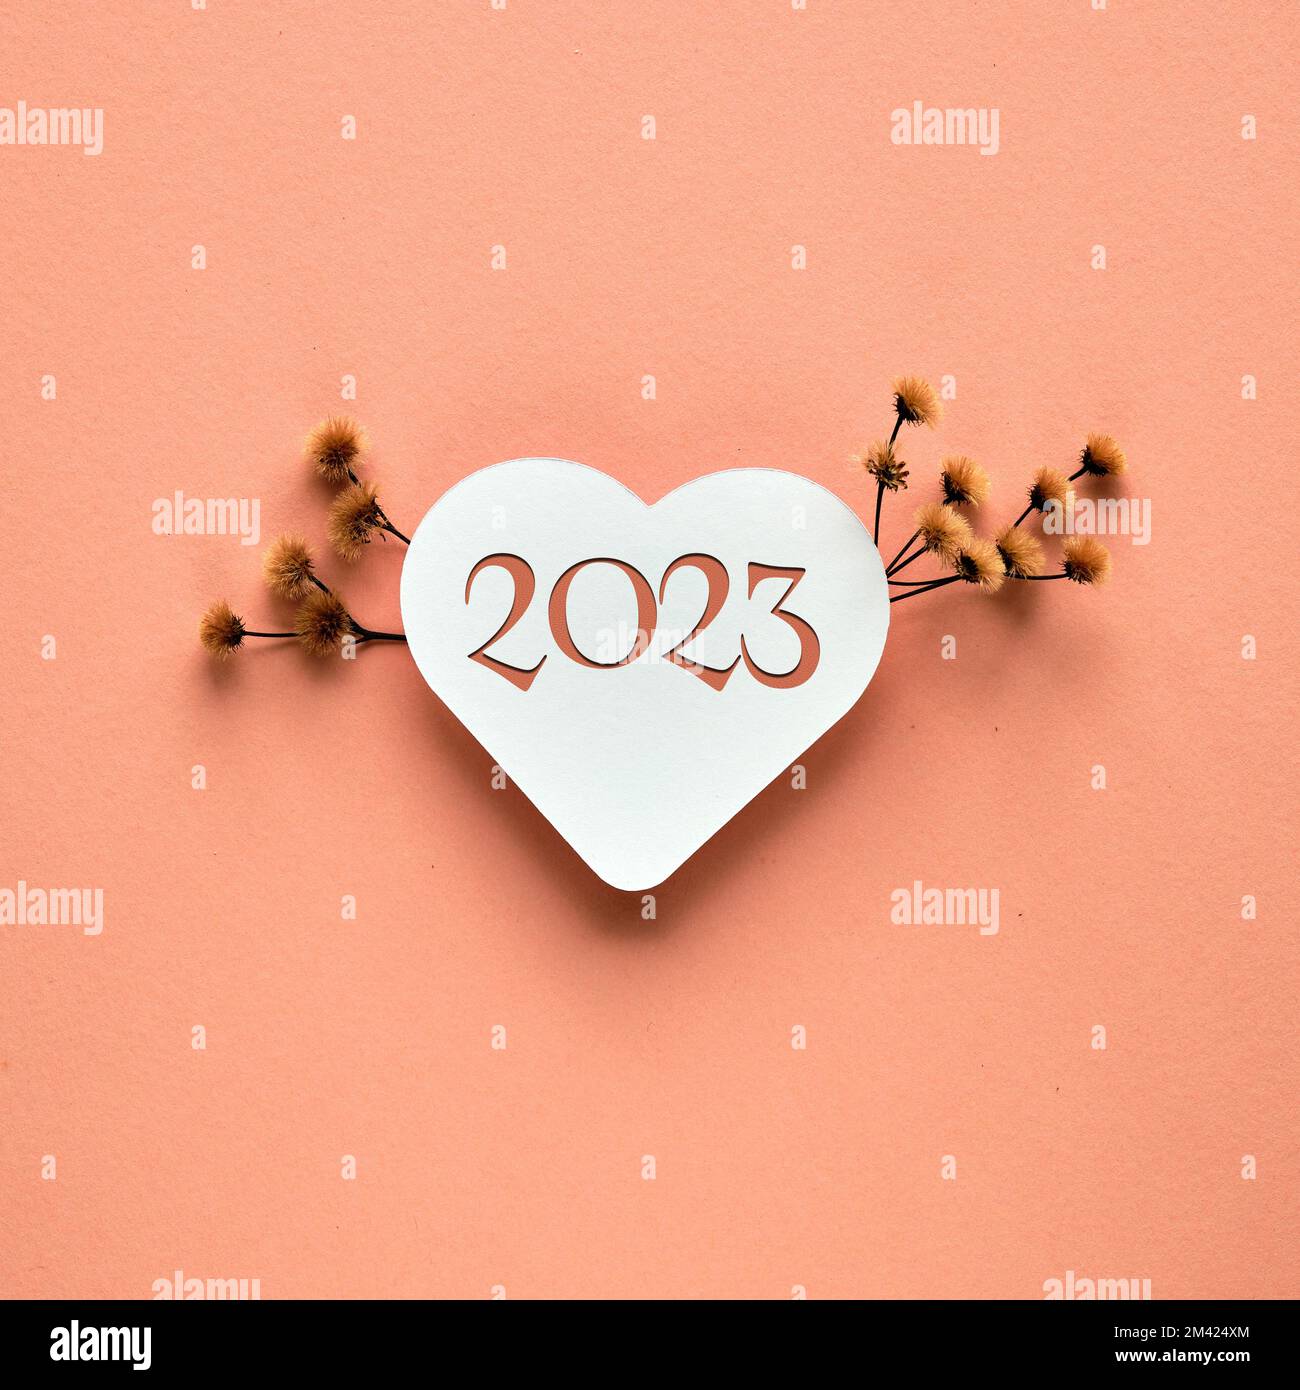 2023 Bonne Année. Coeur de papier avec numéro 2023. Pampas sec herbe, fleurs,  décorations florales sur papier orange. Composition carrée minimaliste  Photo Stock - Alamy